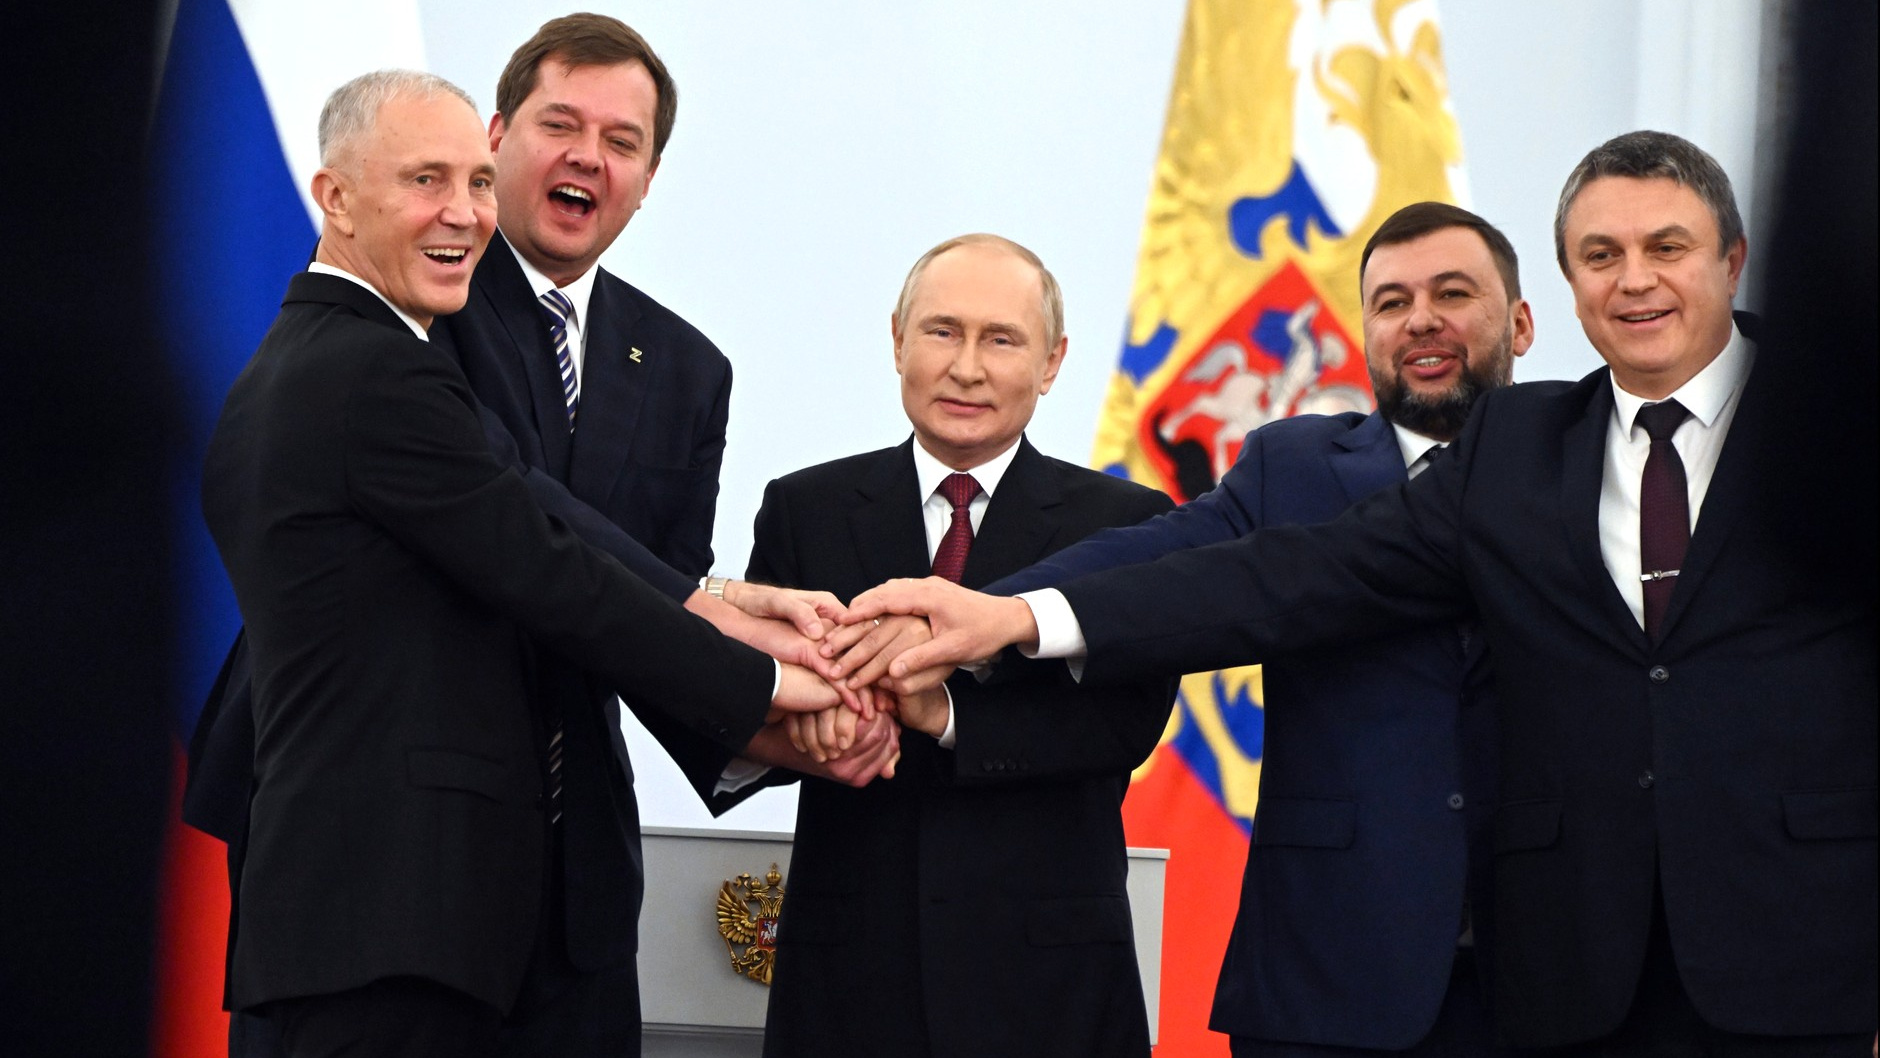 Запорожье, Херсон и ЛДНР вступили в РФ, а Украина попросилась в НАТО